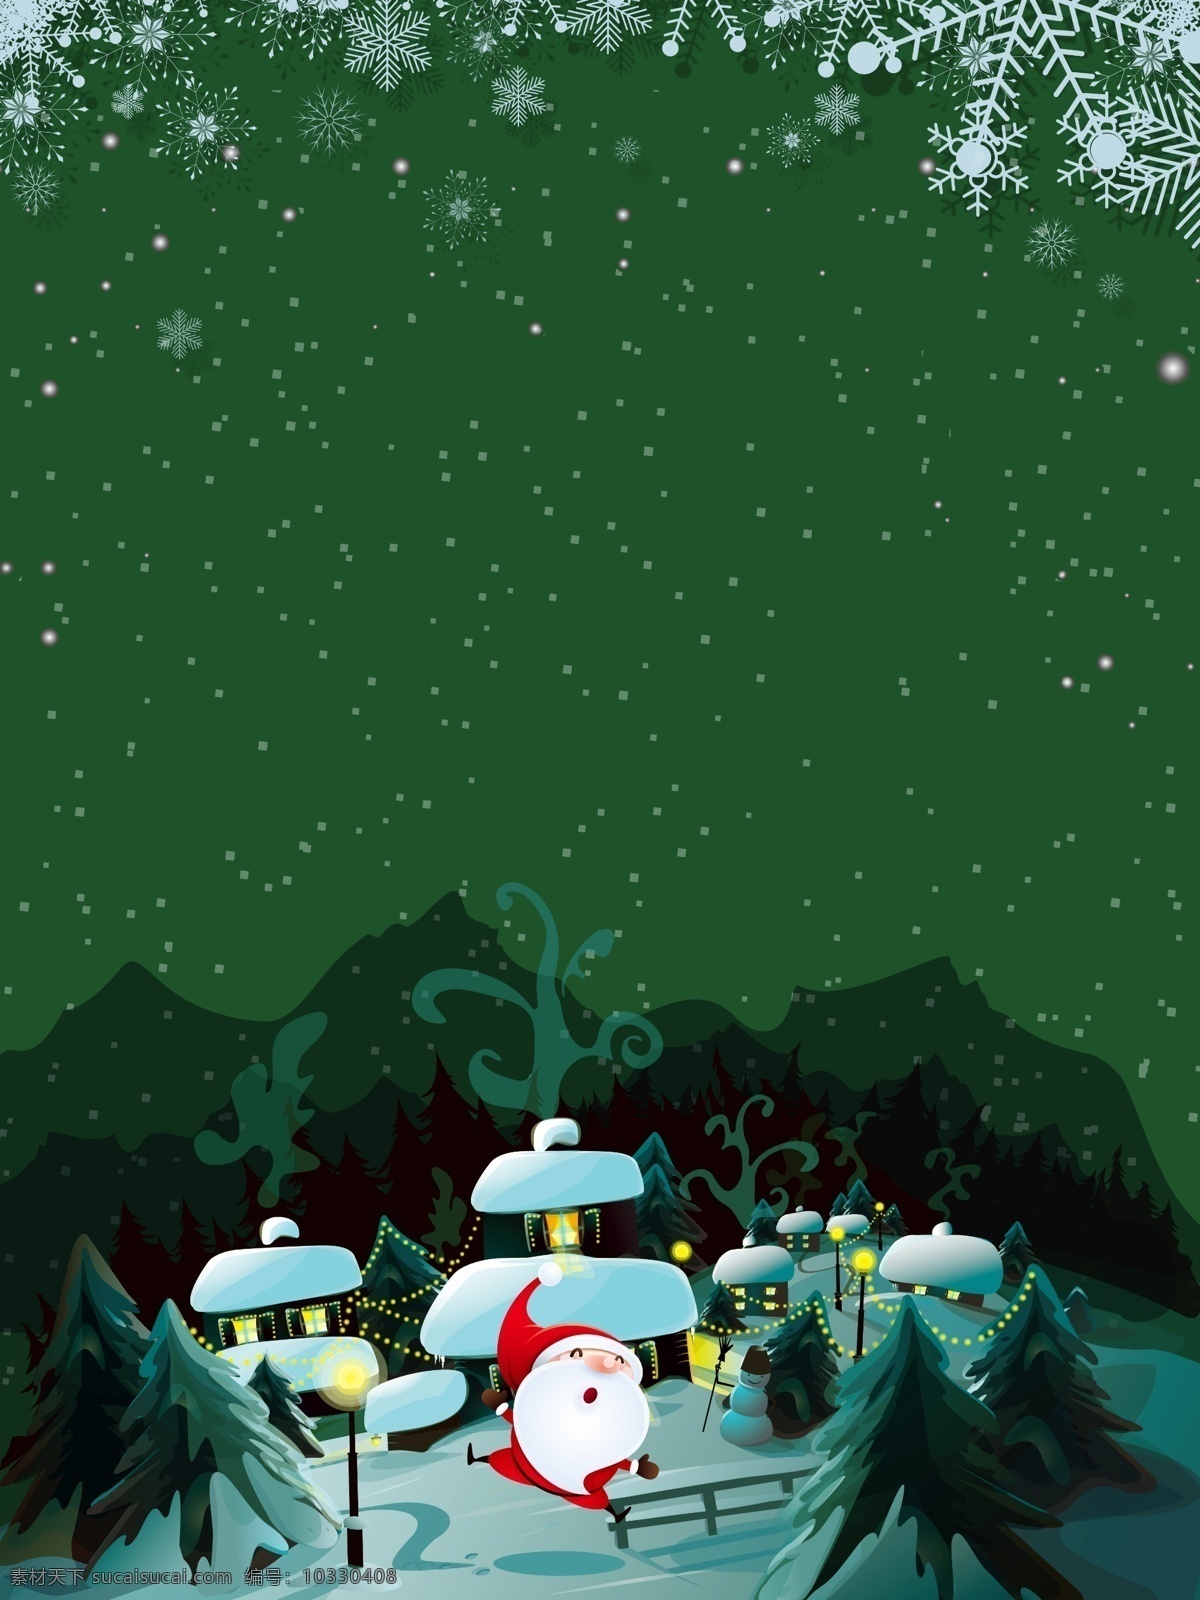 绿色 卡通 圣诞 雪花 背景 绿色背景 森林 背景素材 雪屋 圣诞节背景 圣诞来了 圣诞背景 平安夜 圣诞老人 圣诞活动背景 节日背景 广告背景